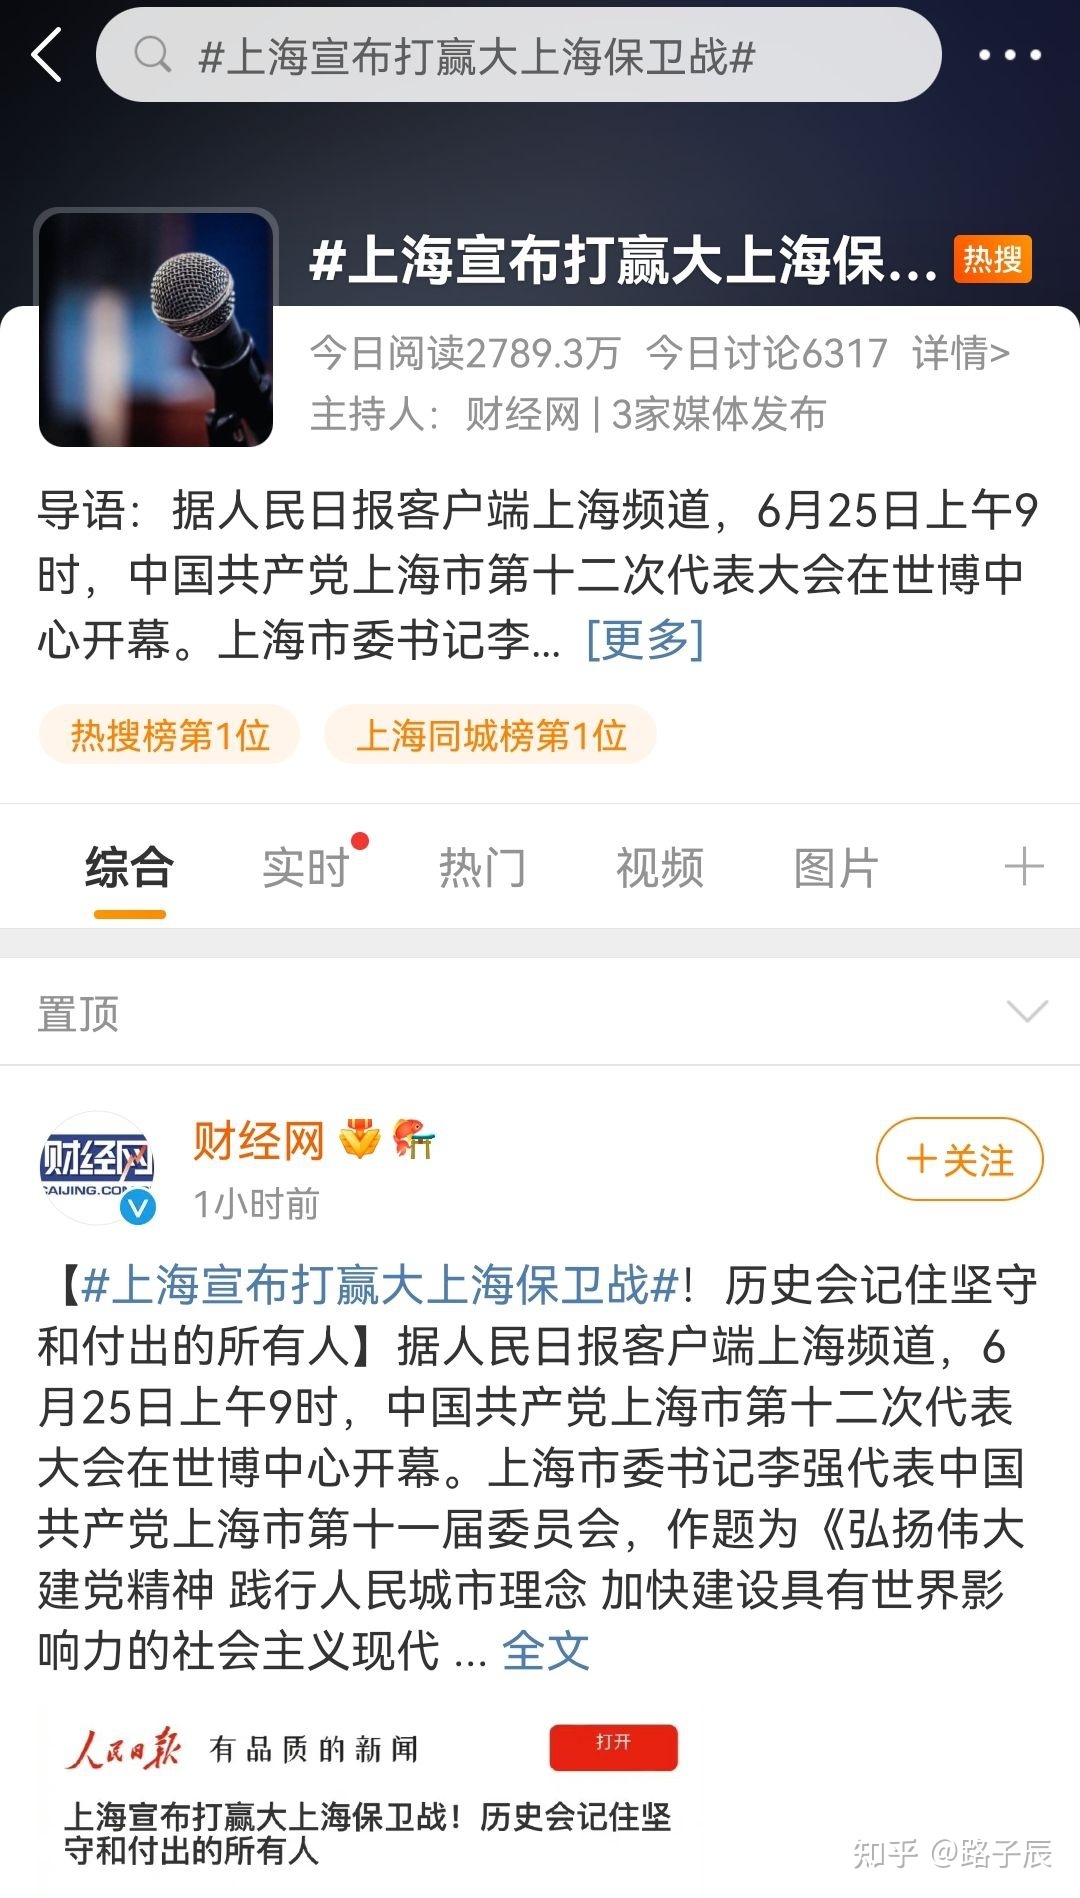 6 月 24 日上海本土 0 新增